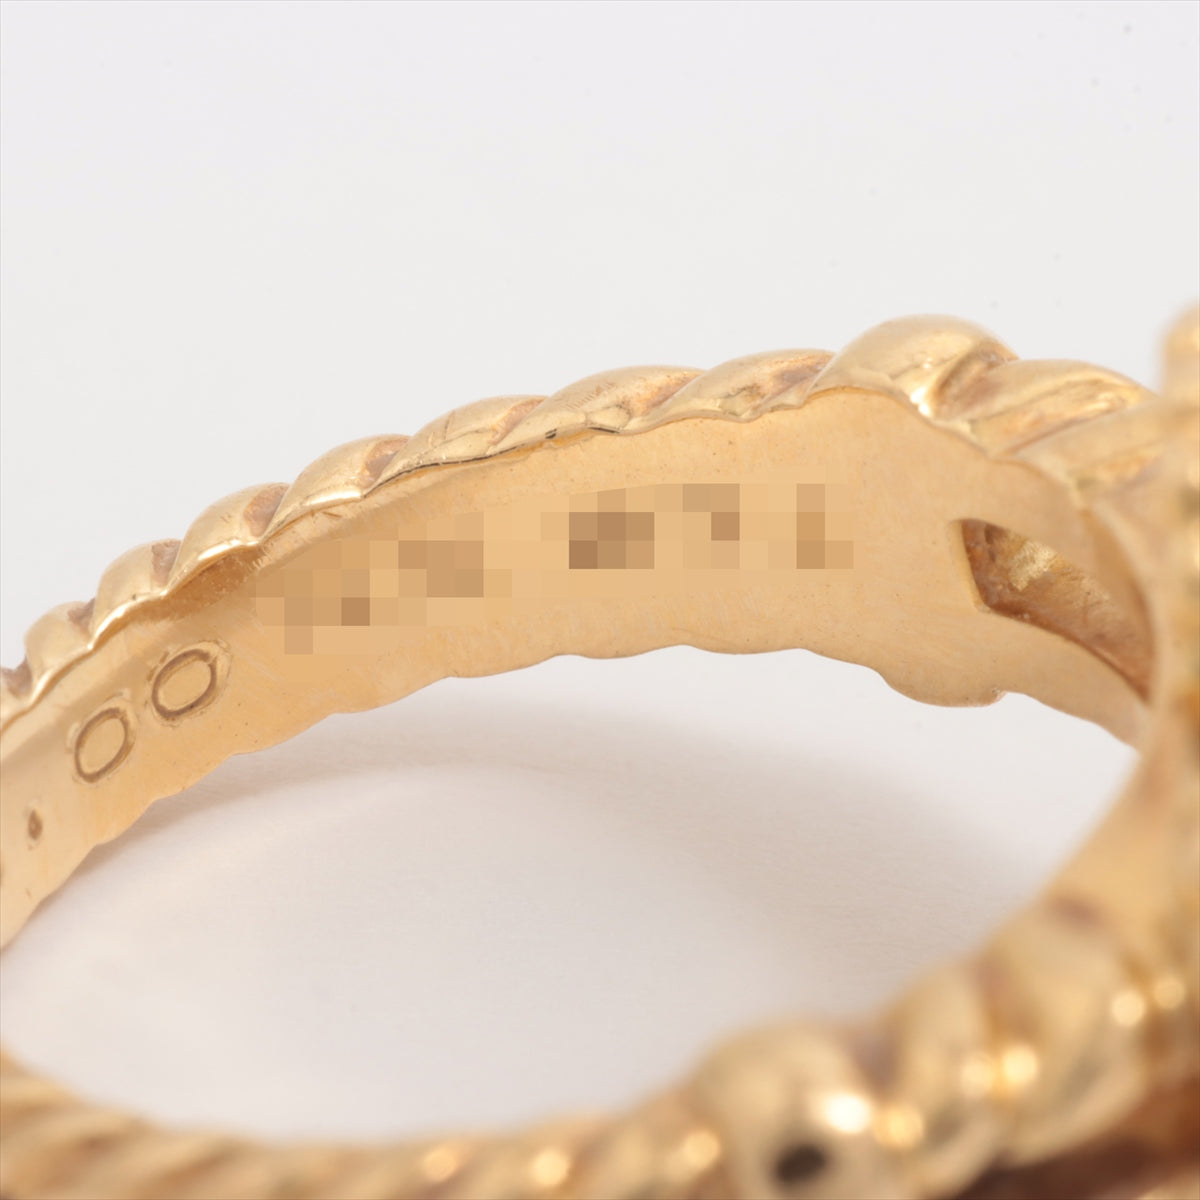 Van Cleef & Arpels Vintage Alhambra Onyx Diamond Ring 750(YG) 7.3g